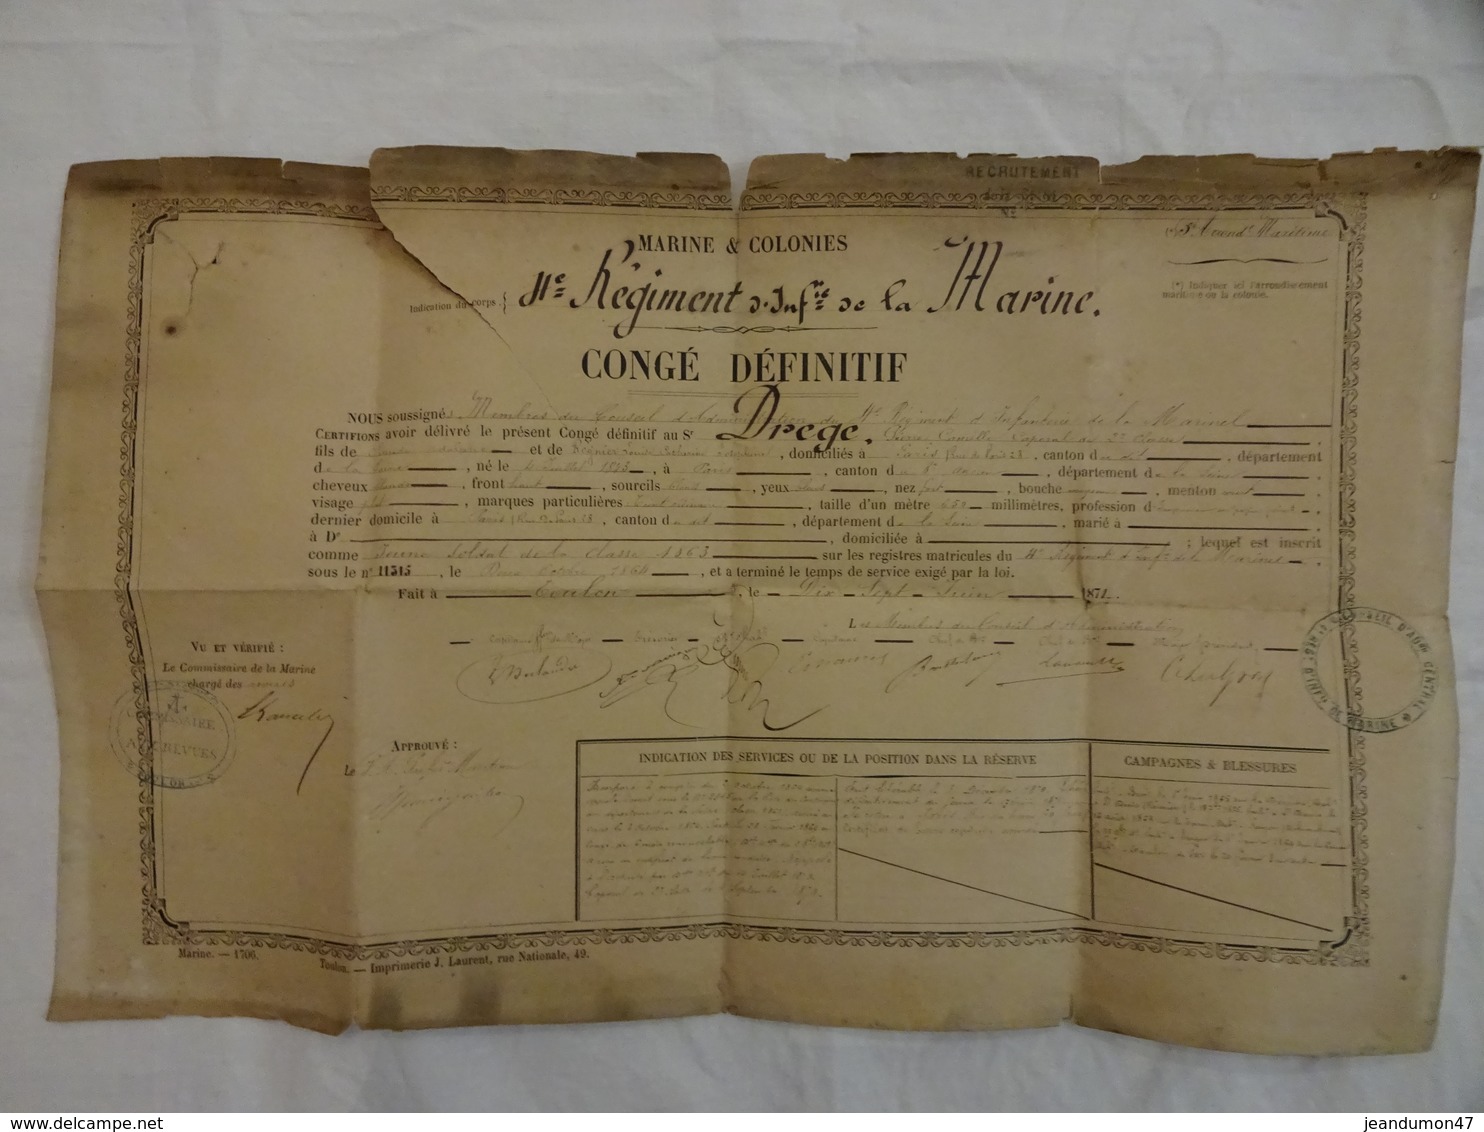 MARINE & COLONIES - ANNEE 1871 -  4 E REGIMENT D'INFANTERIE DE LA MARINE. CONGE DEFINITIF. SOLDAT DE LA CLASSE 1863 - Documents